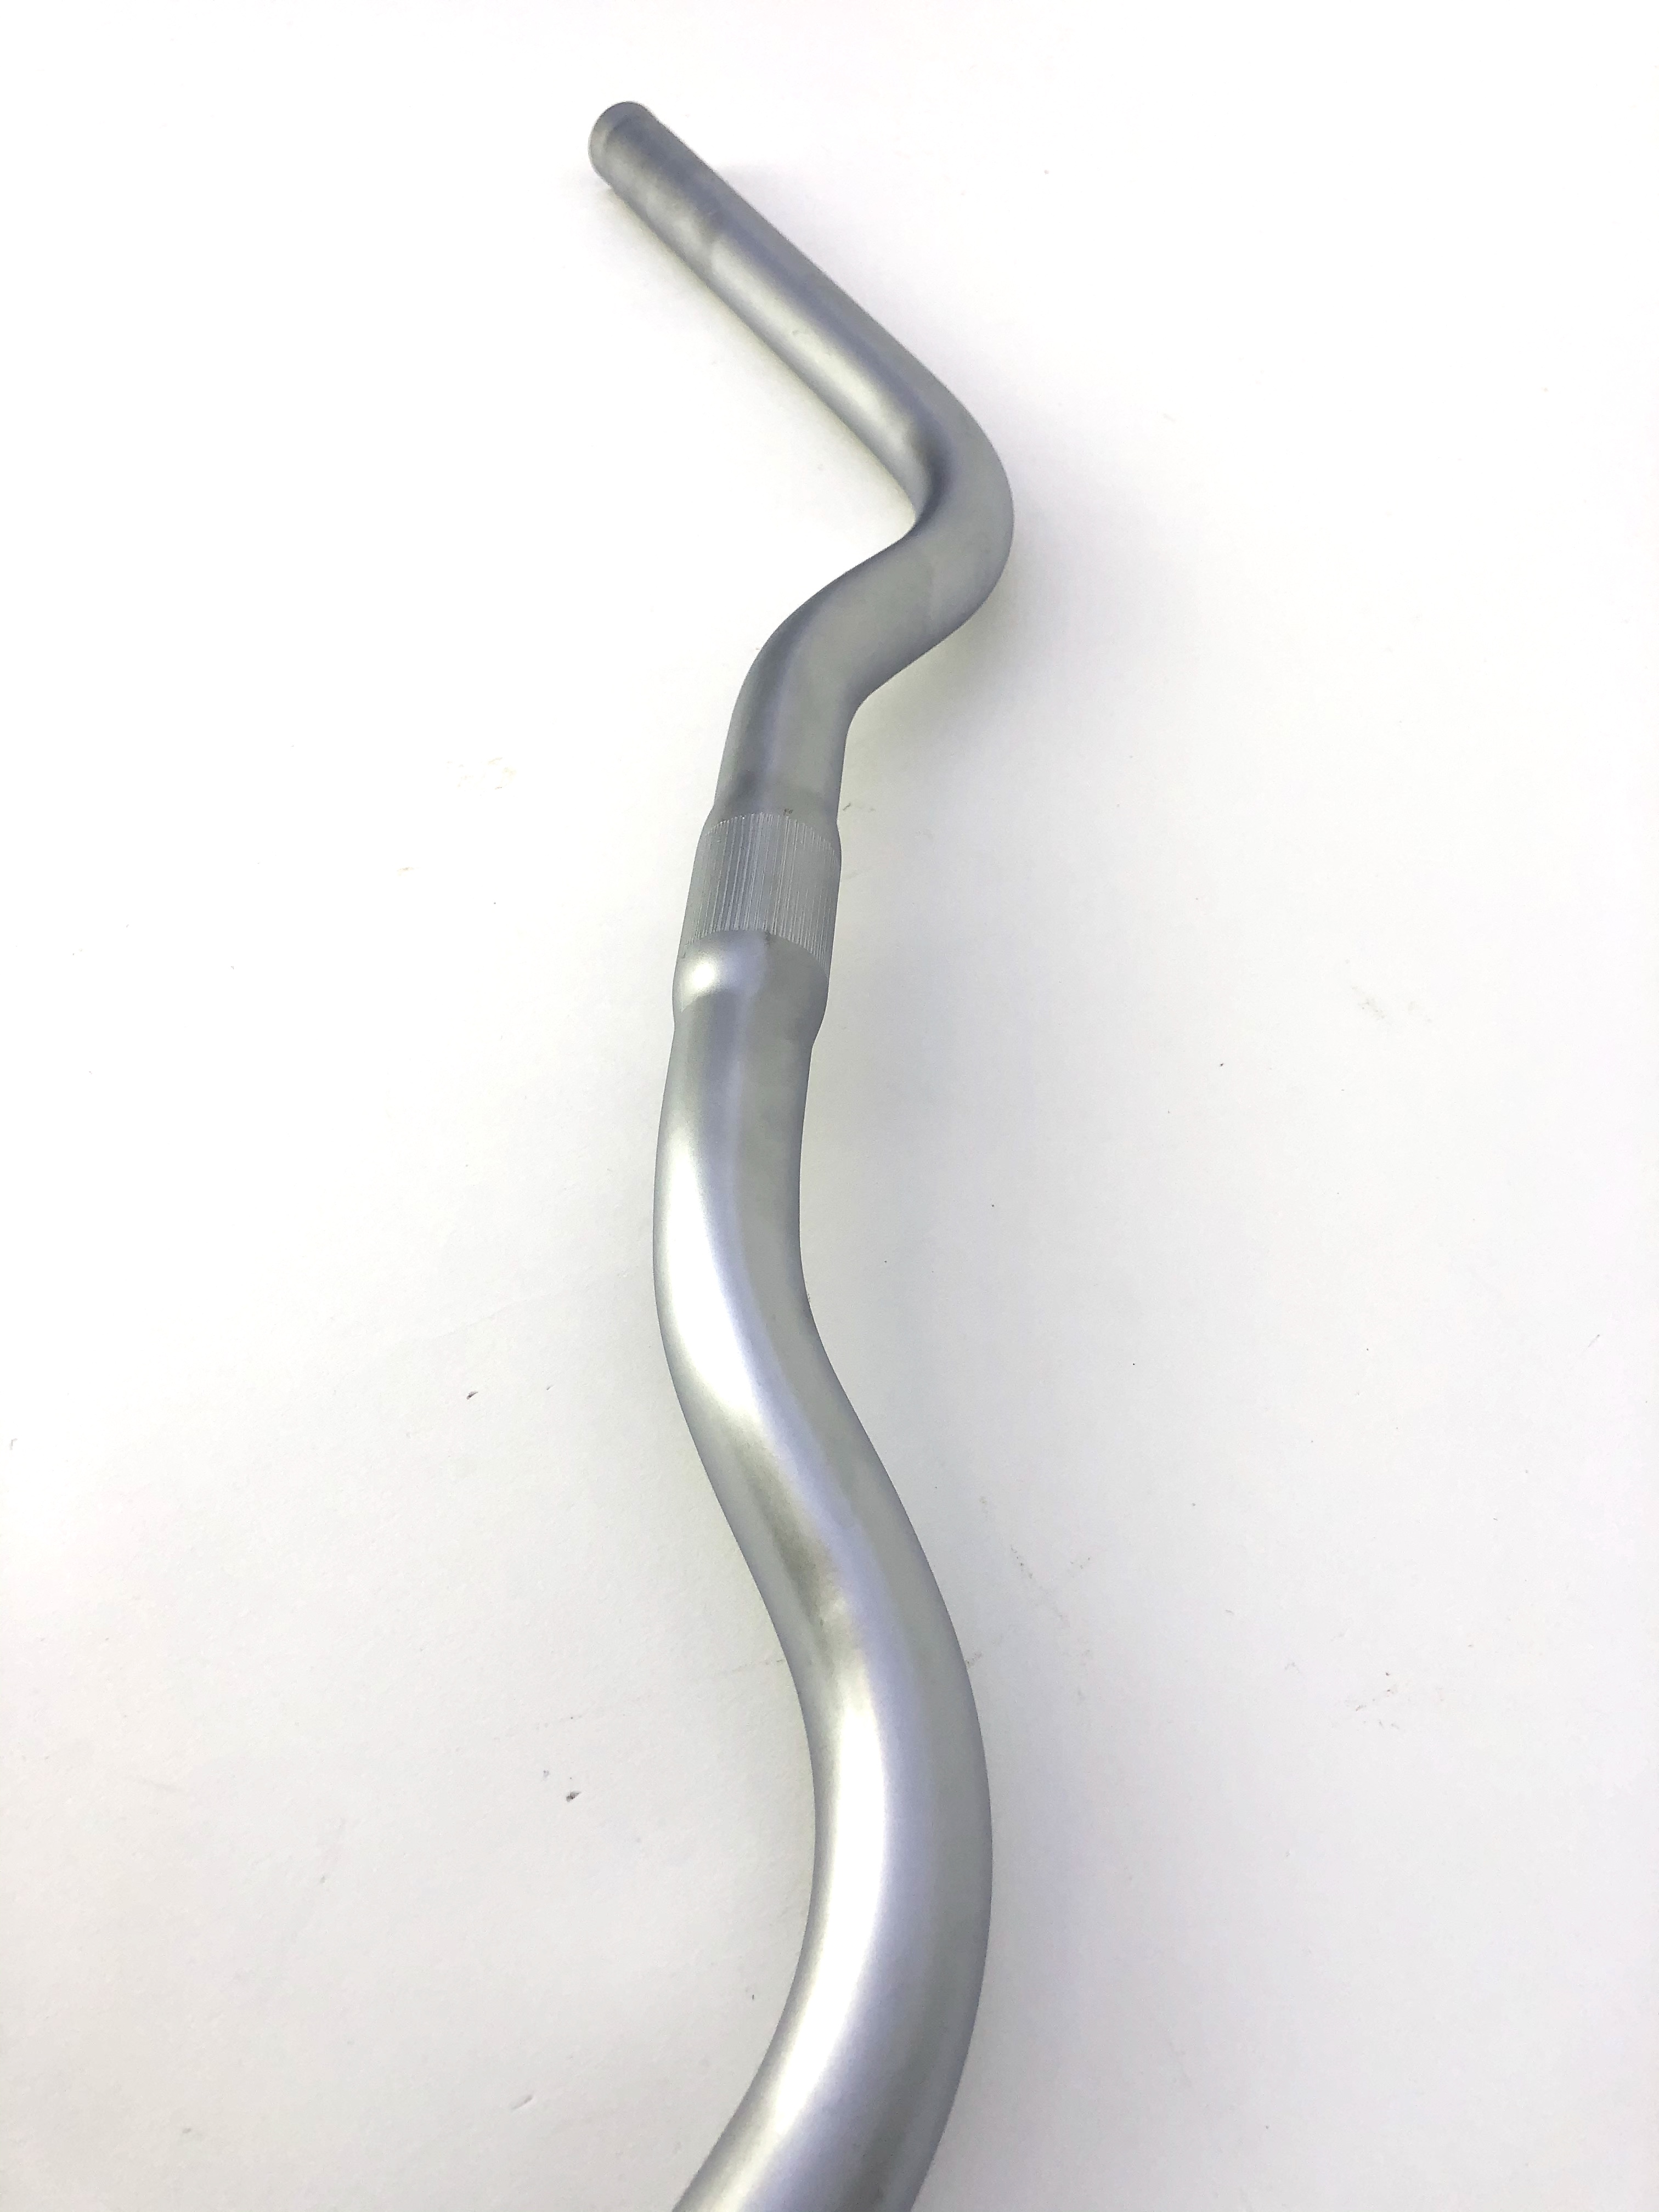 Manubrio Boardtracker, 630 mm in color argento simil alluminio